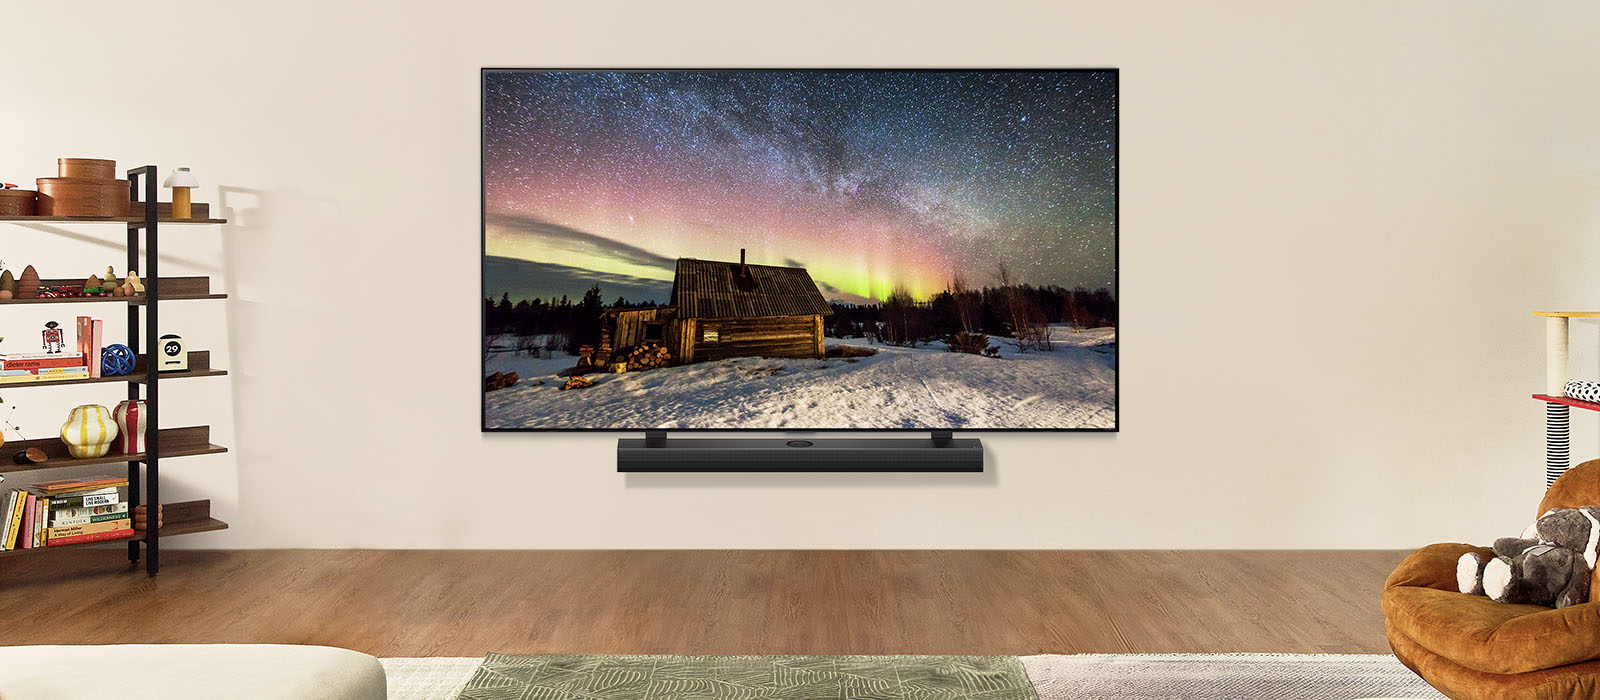 Телевизор LG TV и звуковая панель LG Soundbar в современном жилом пространстве в дневное время. Изображение северного сияния на экране отображается с идеальным уровнем яркости.